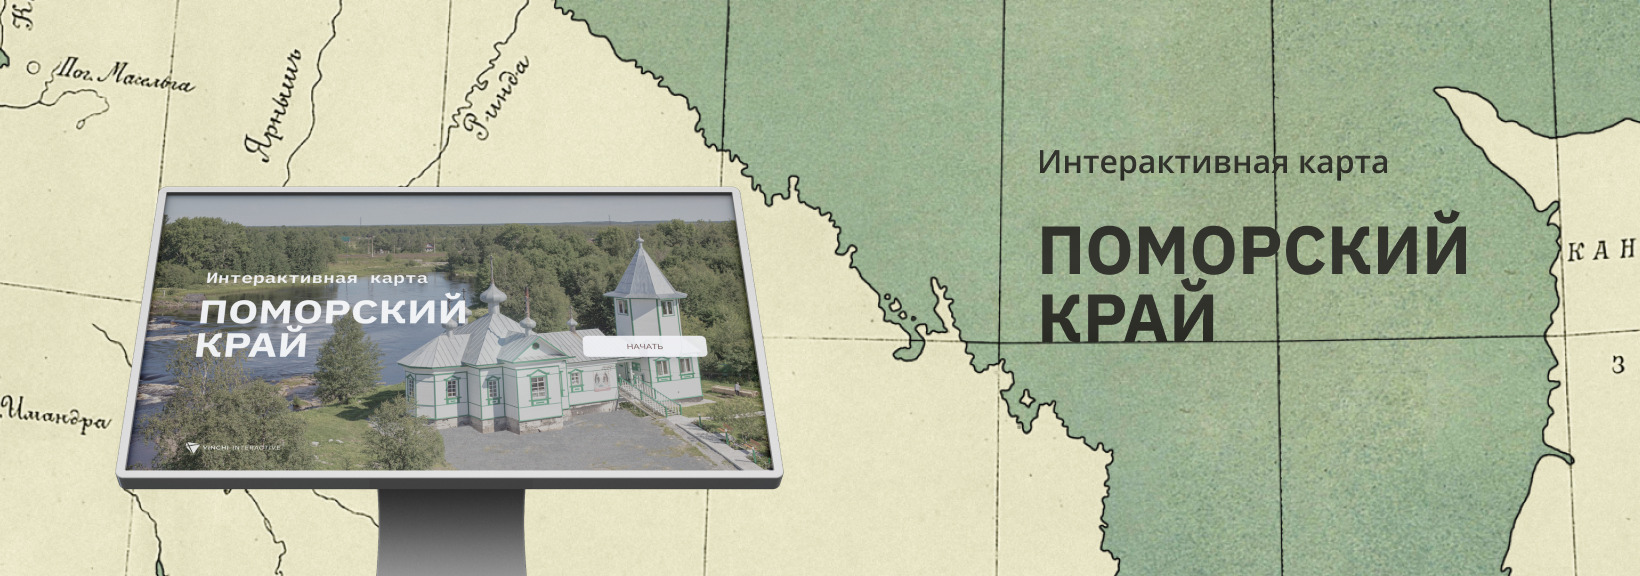 Интерактивная карта «Поморский край»